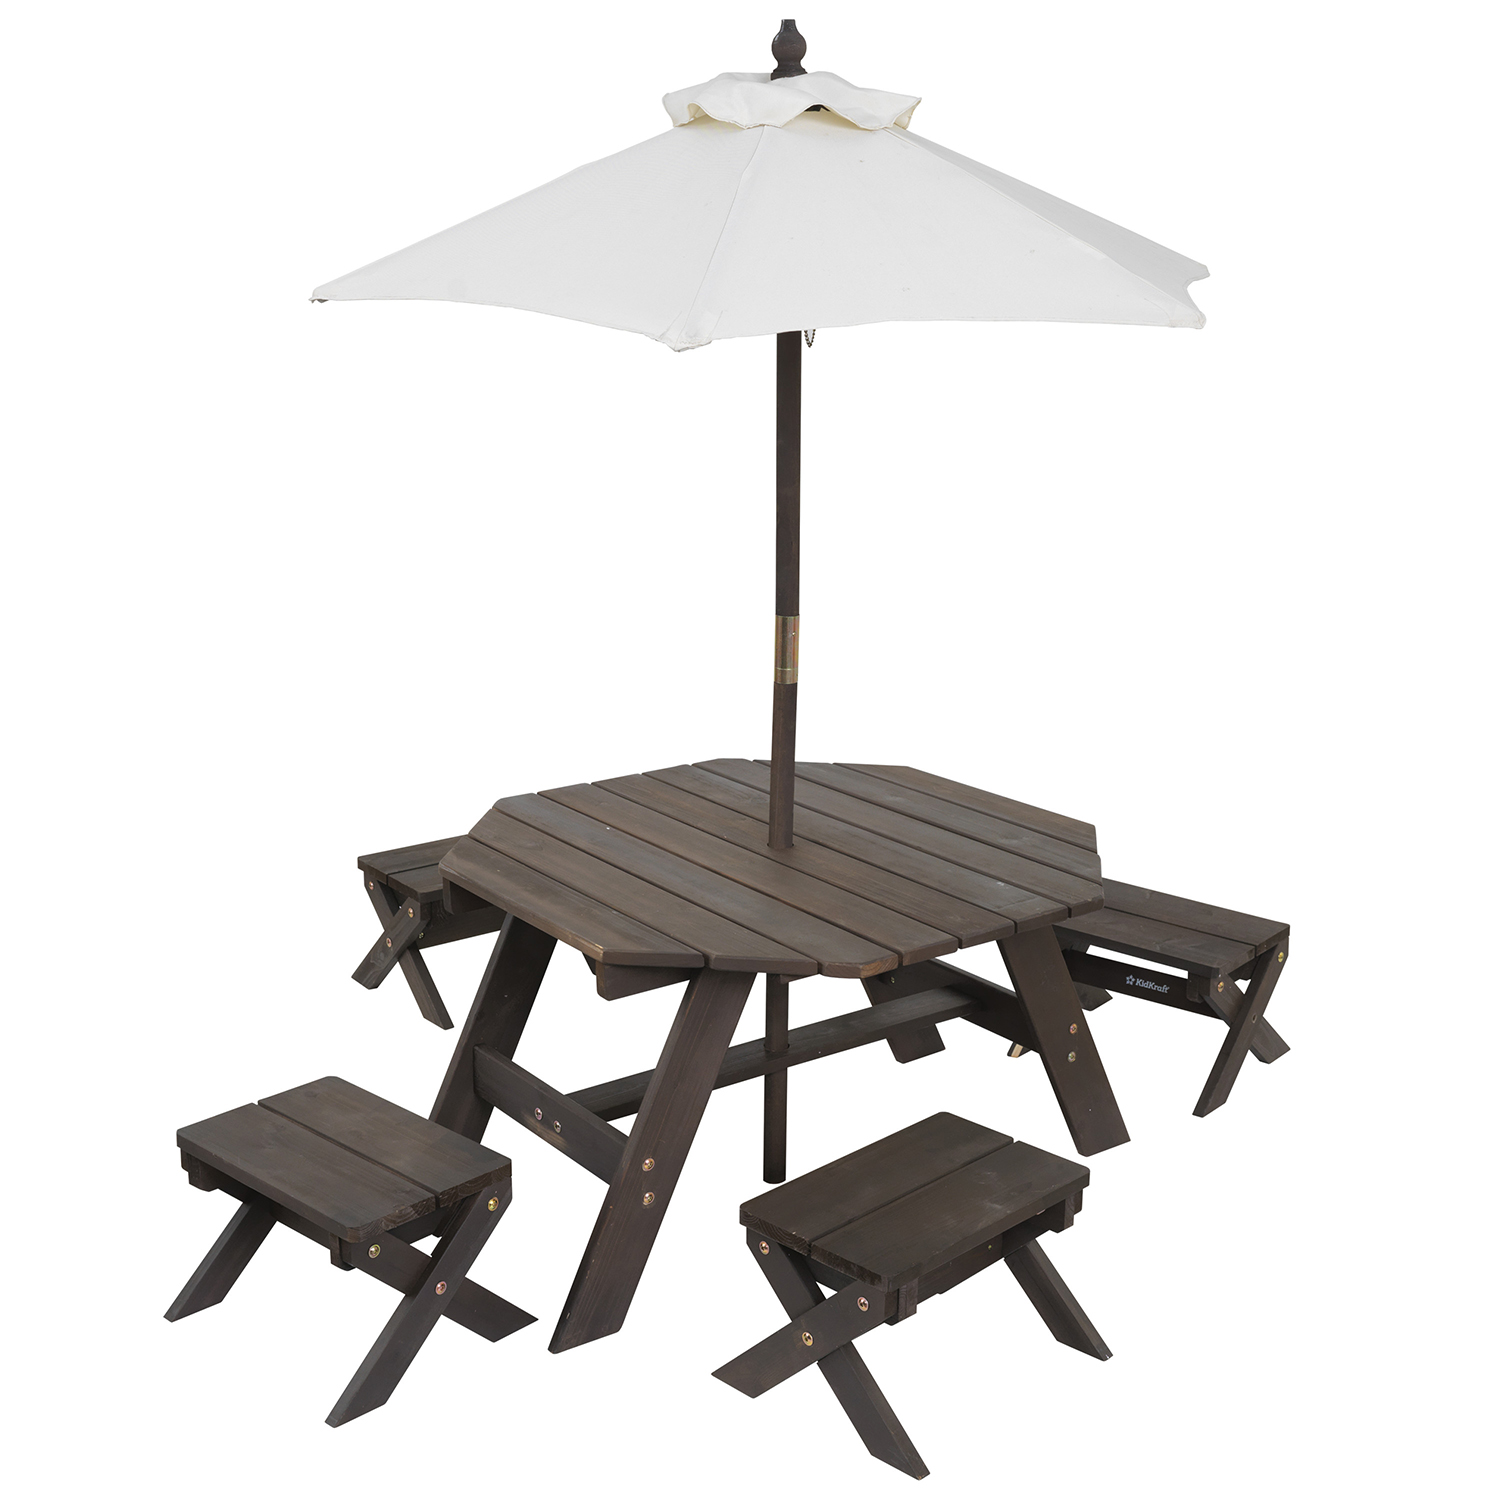 Детская садовая мебель KidKraft 4 скамьи стол-пикник зонт бежево-коричневый 20304_KE - фото 2